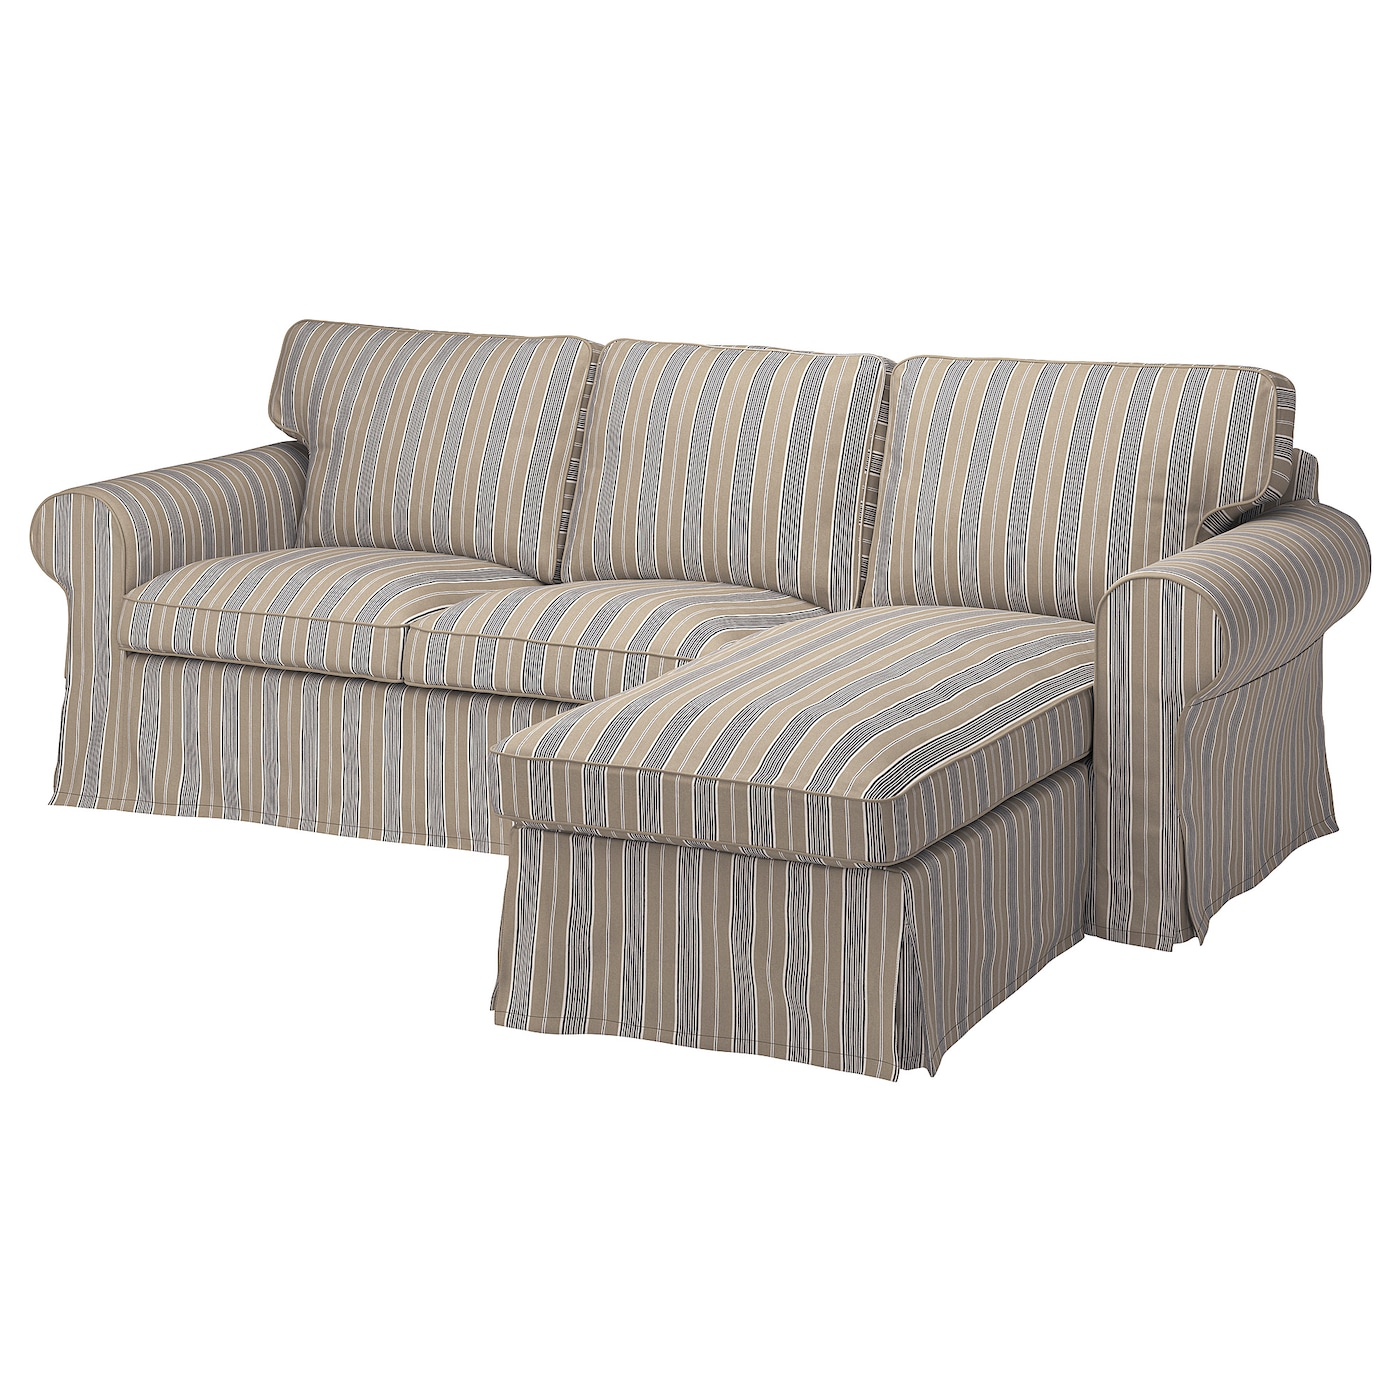 3-местный диван с шезлонгом - IKEA EKTORP, 88x88x252см, бежевый, ЭКТОРП ИКЕА